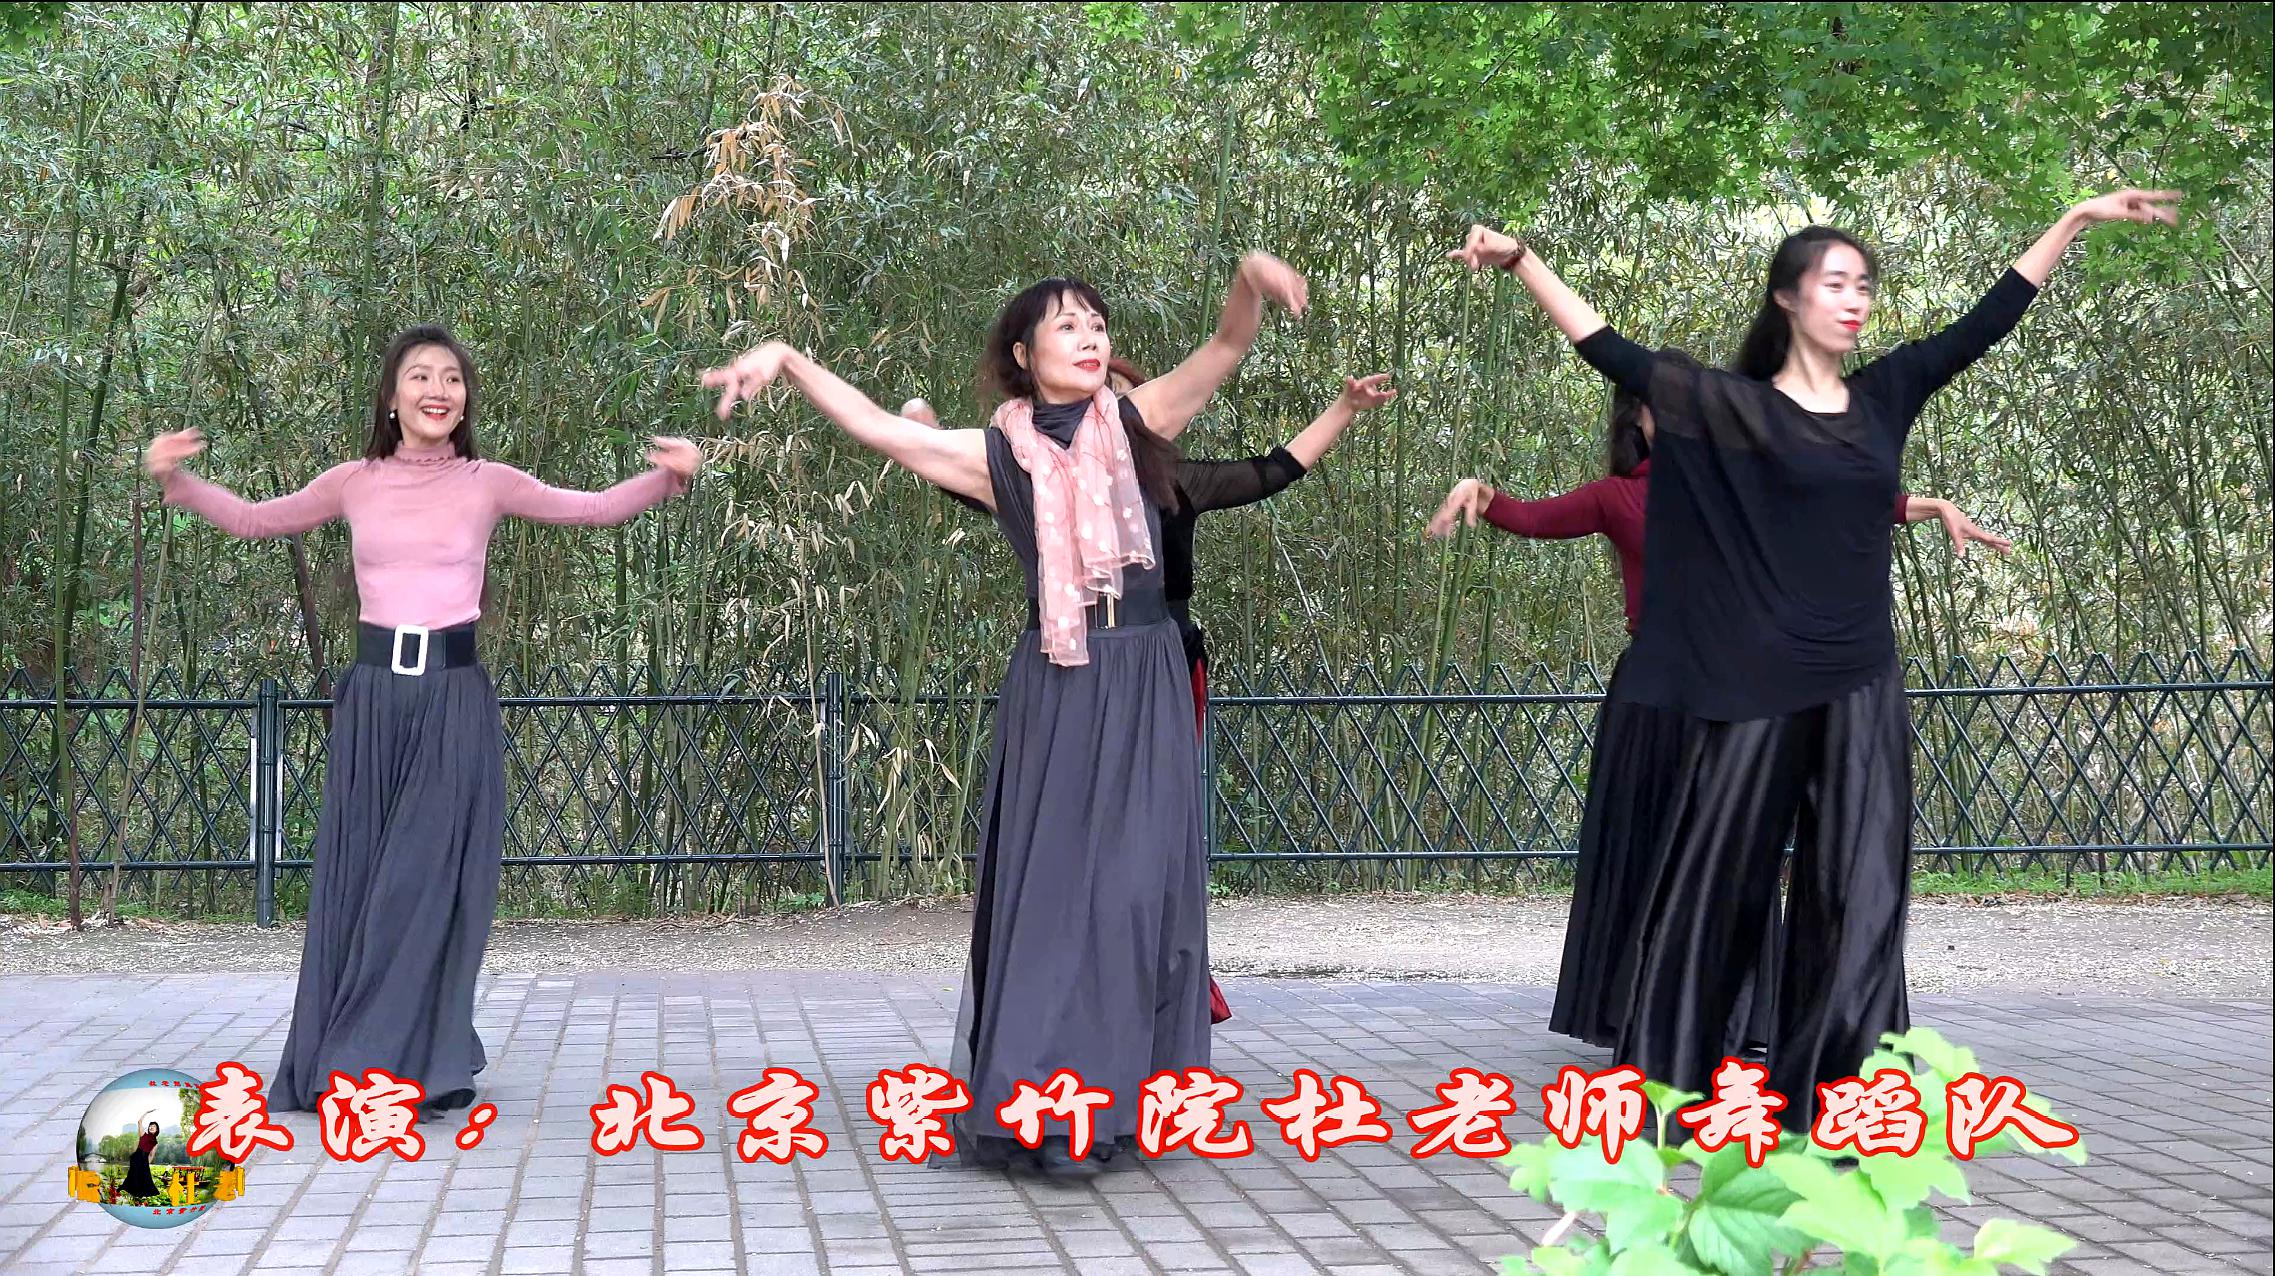 紫竹院广场舞《幸福爱河》,欢快俏皮动感时尚!